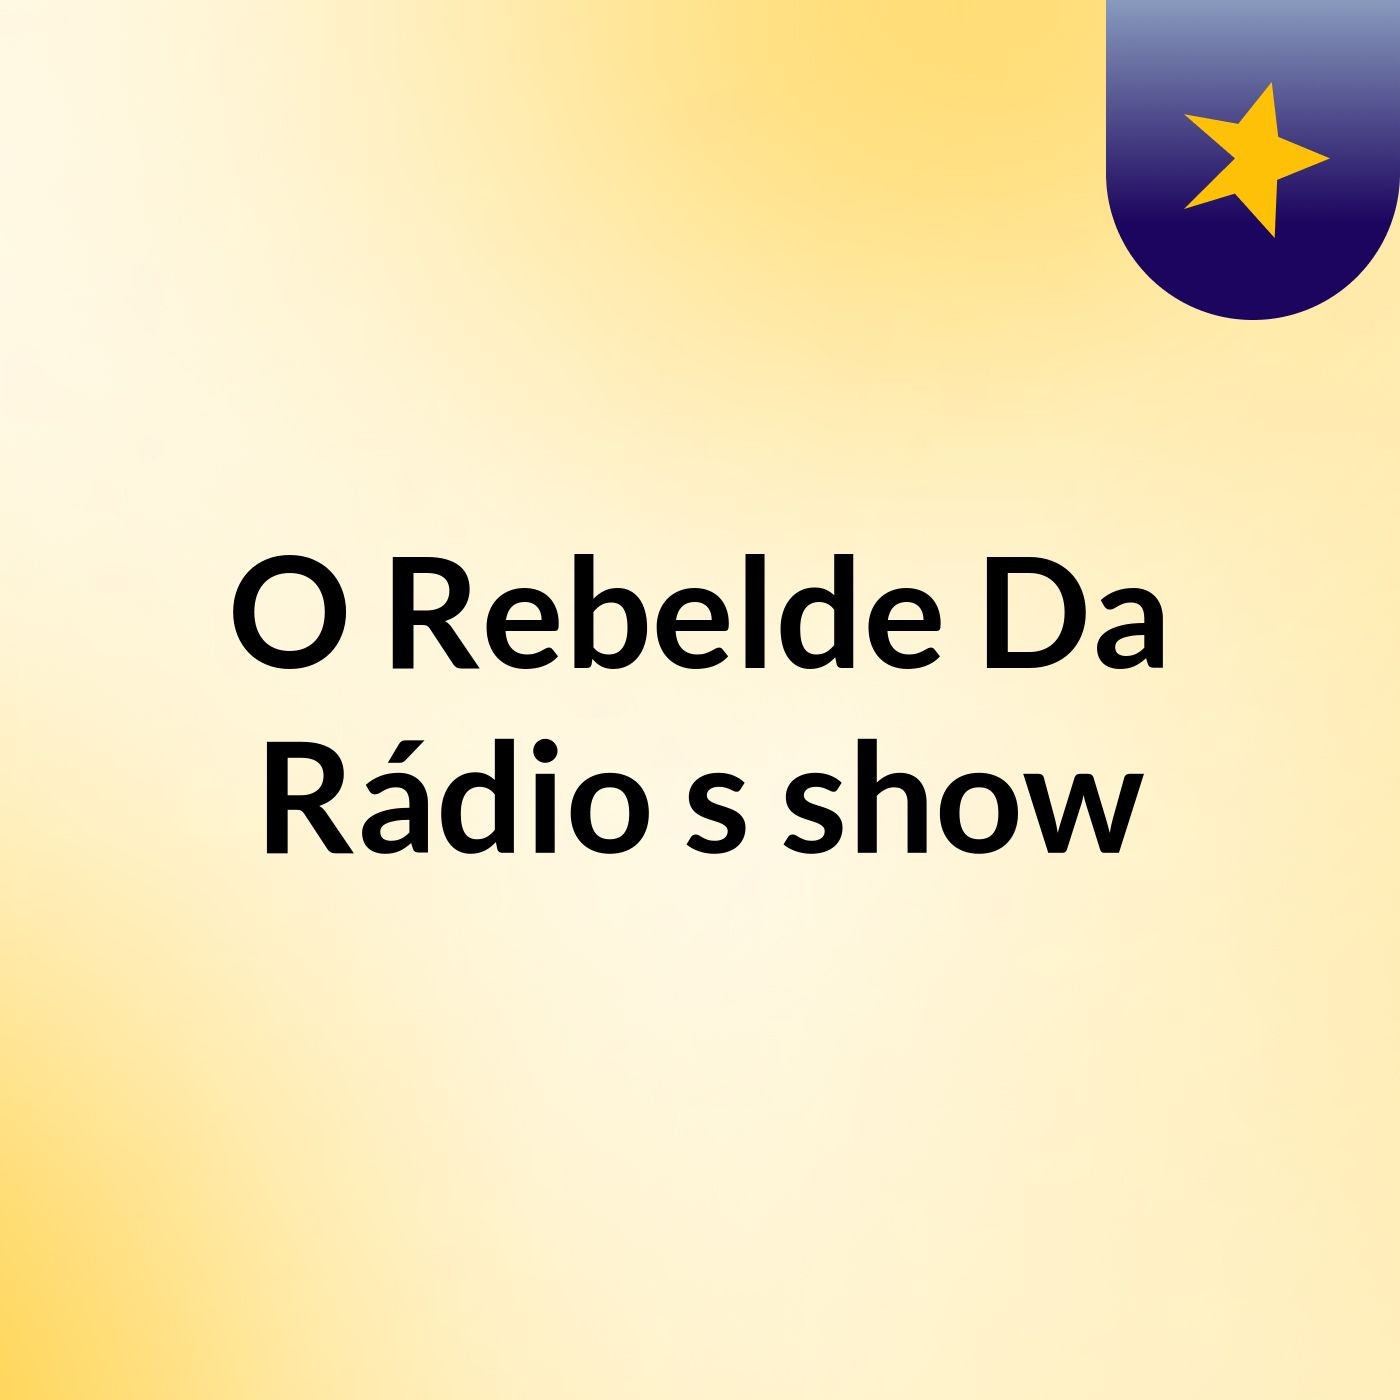 O Rebelde Da Rádio's show